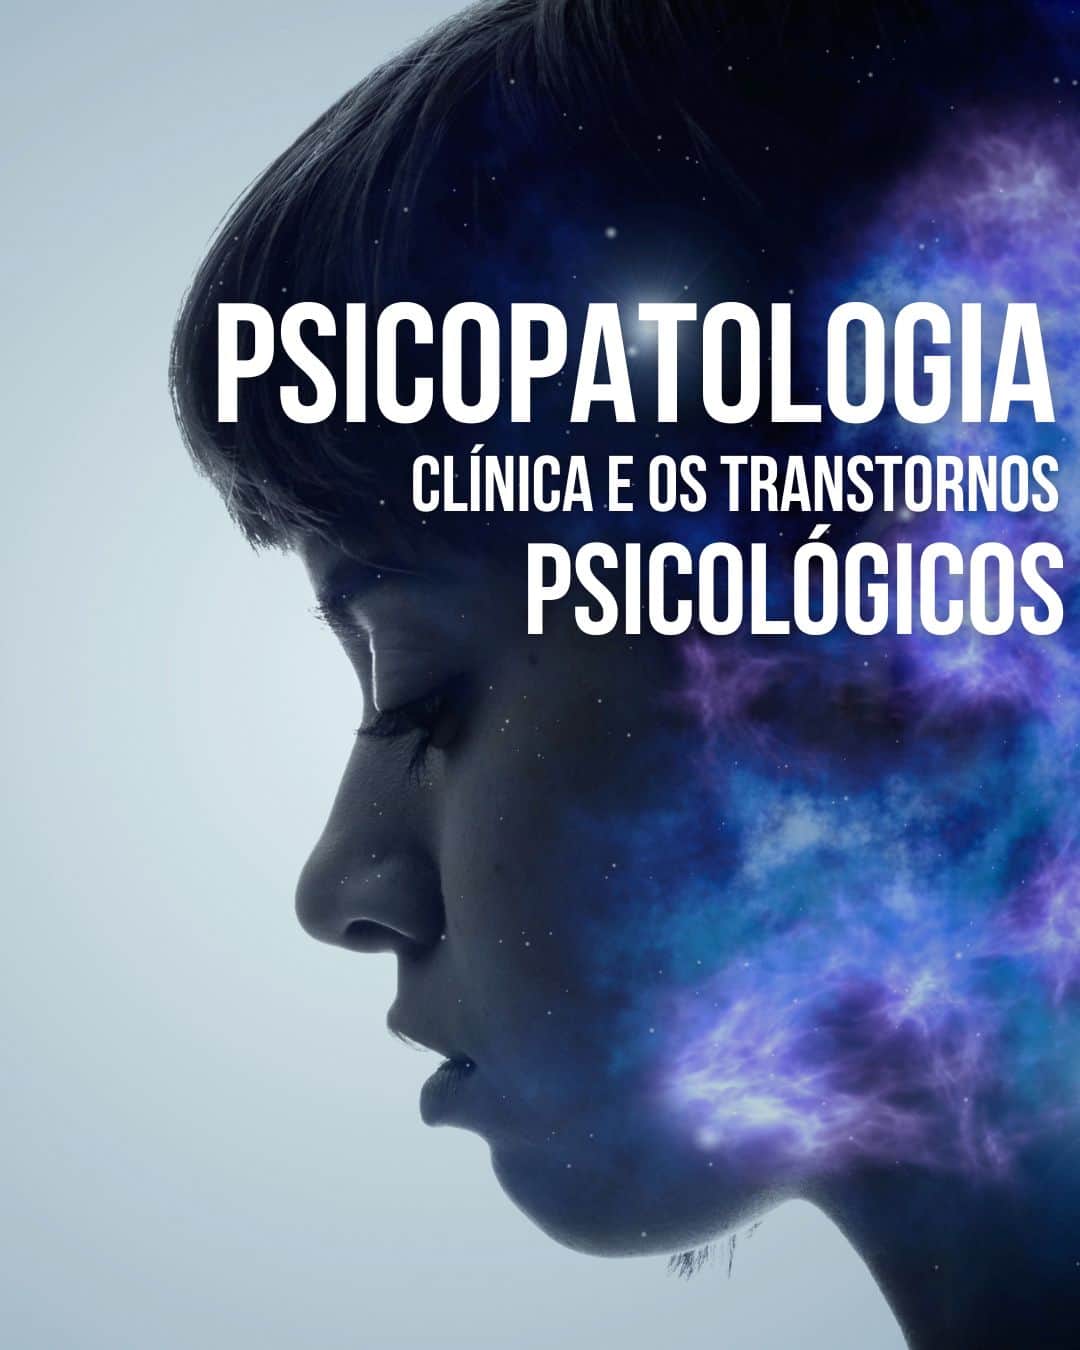 Psicopatologia Clínica-min (1)